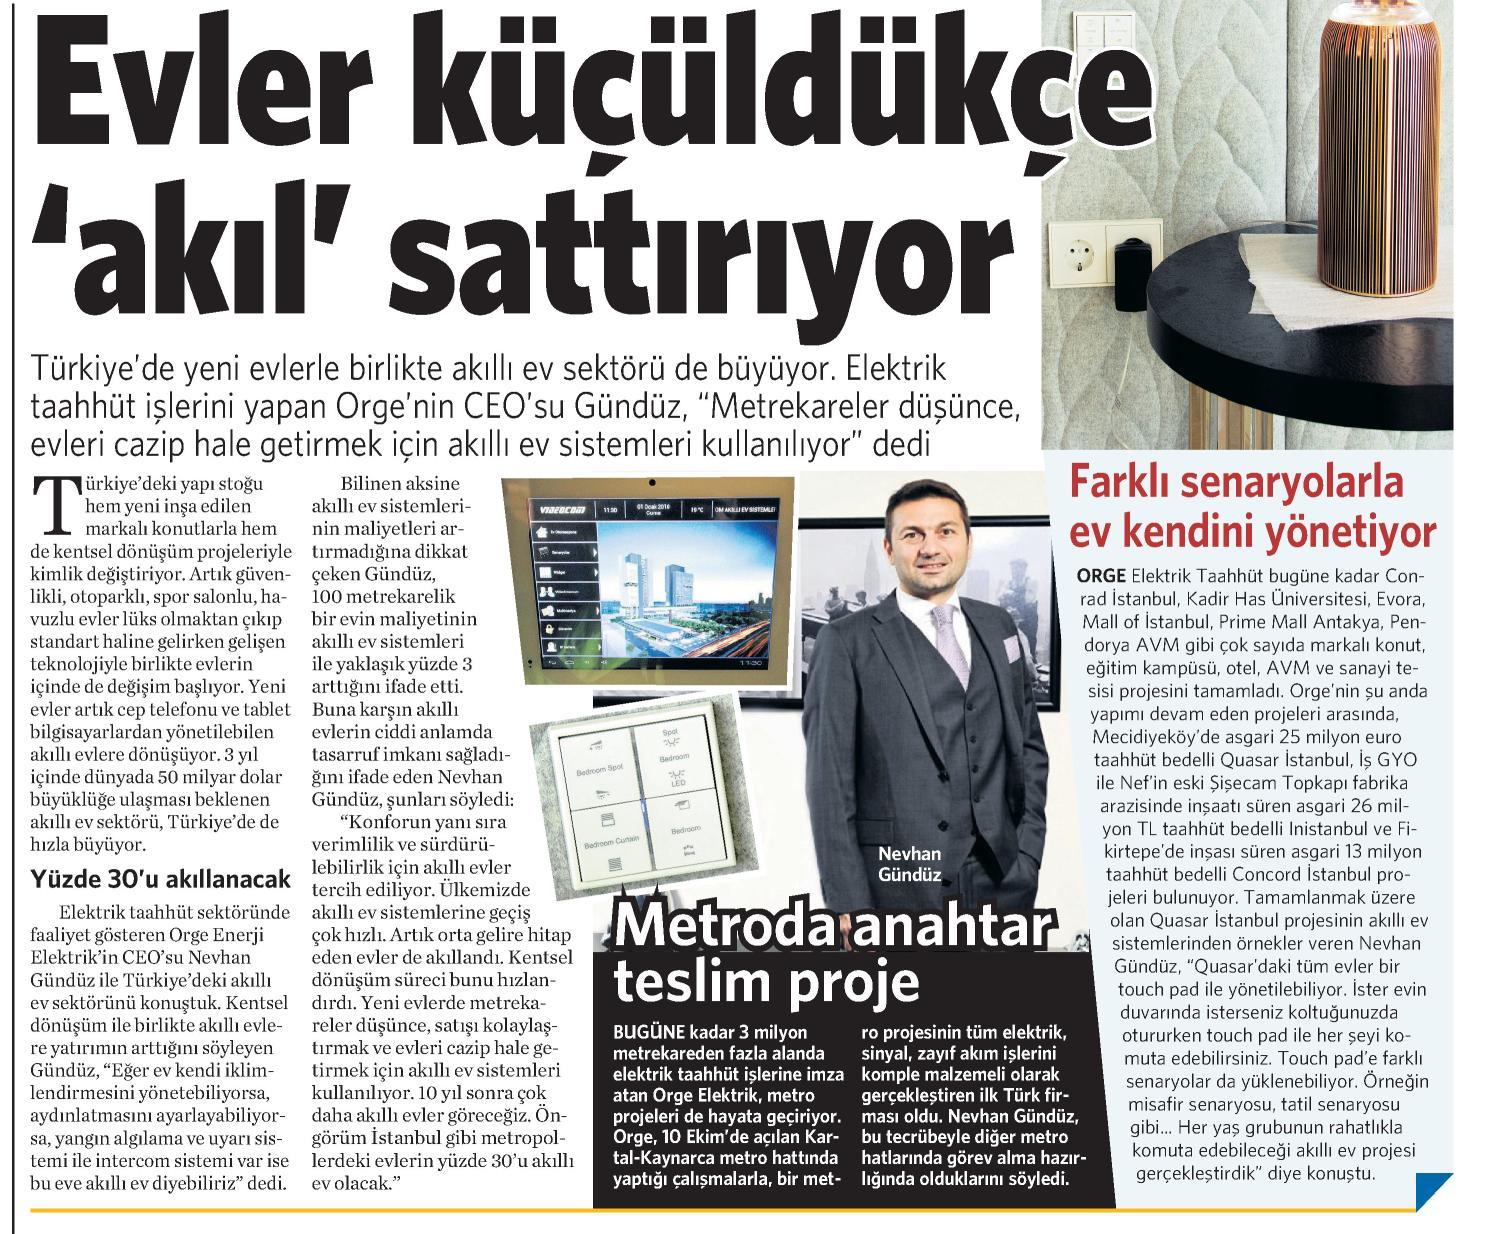 CEO Mr. Nevhan Gündüz gave an interview to The Daily Newspaper Vatan